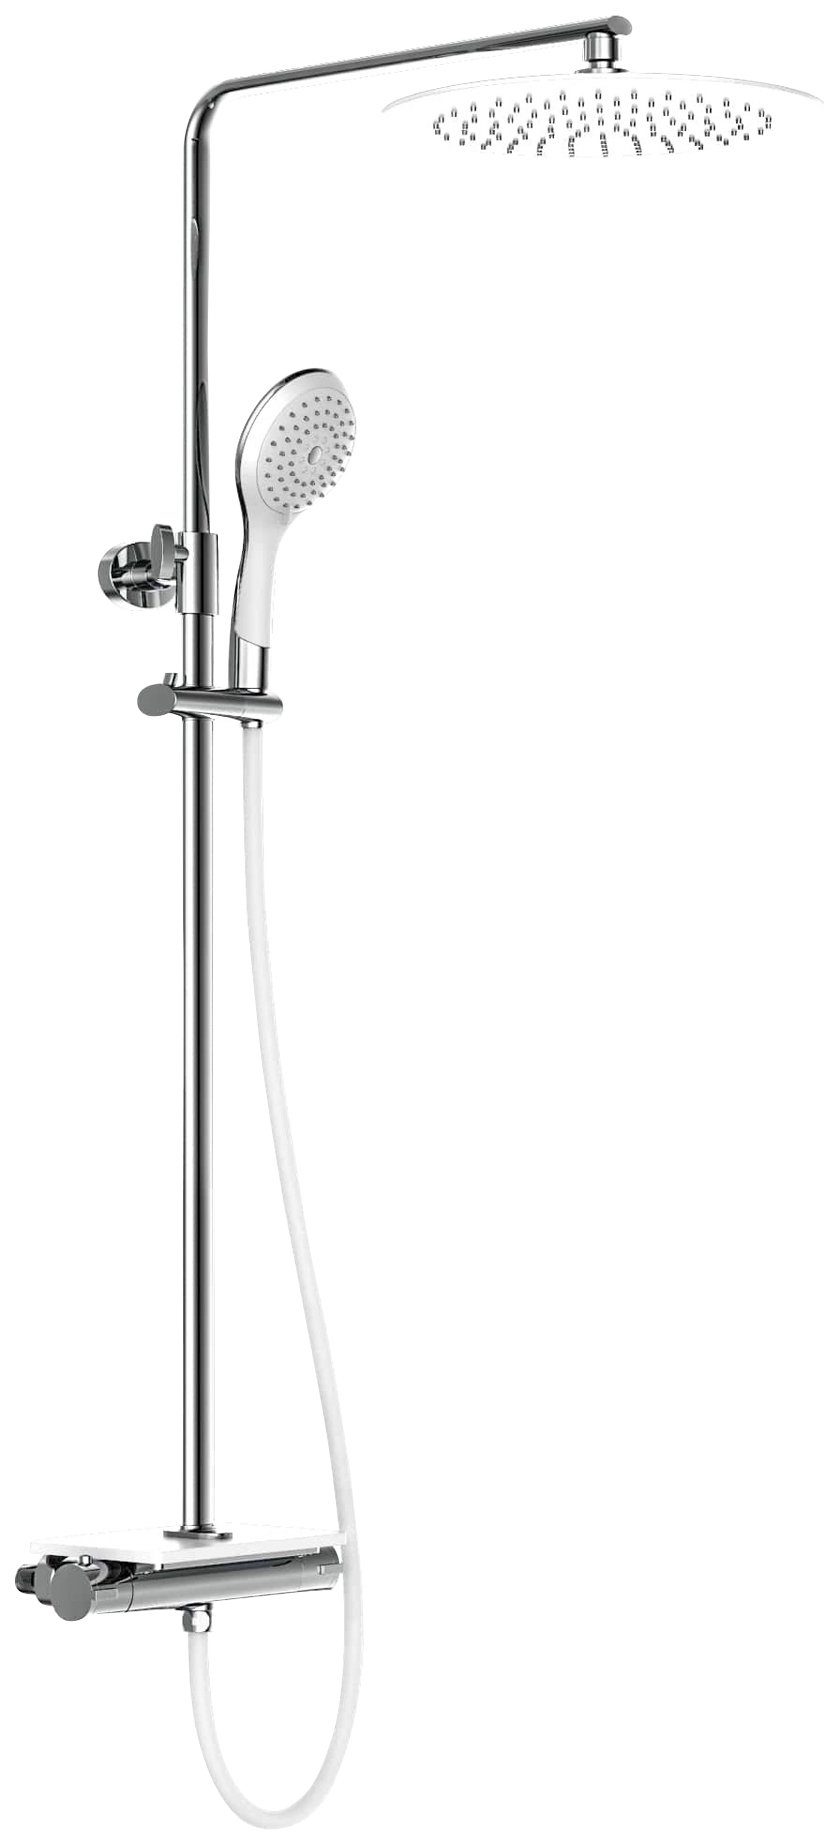 Eisl Brausegarnitur Grande Vita, Höhe 101 cm, Duschsystem mit Thermostat und Ablage, Regendusche mit Wandhalterung weiß-chromfarben